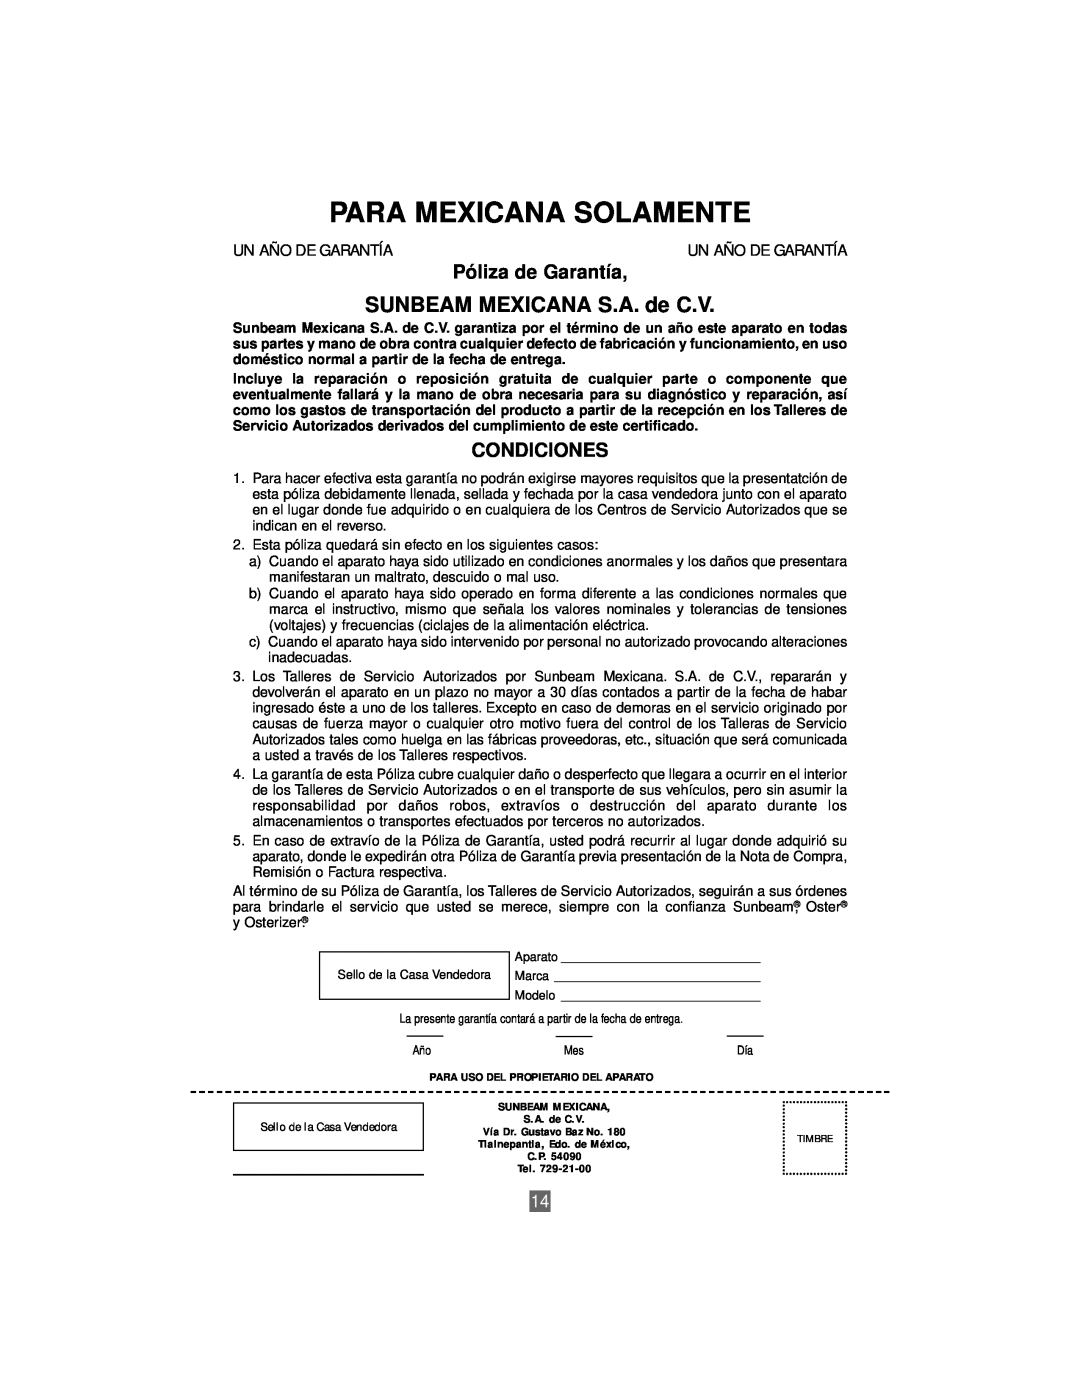 Oster 3207 instruction manual Para Mexicana Solamente, SUNBEAM MEXICANA S.A. de C.V, Póliza de Garantía, Condiciones 